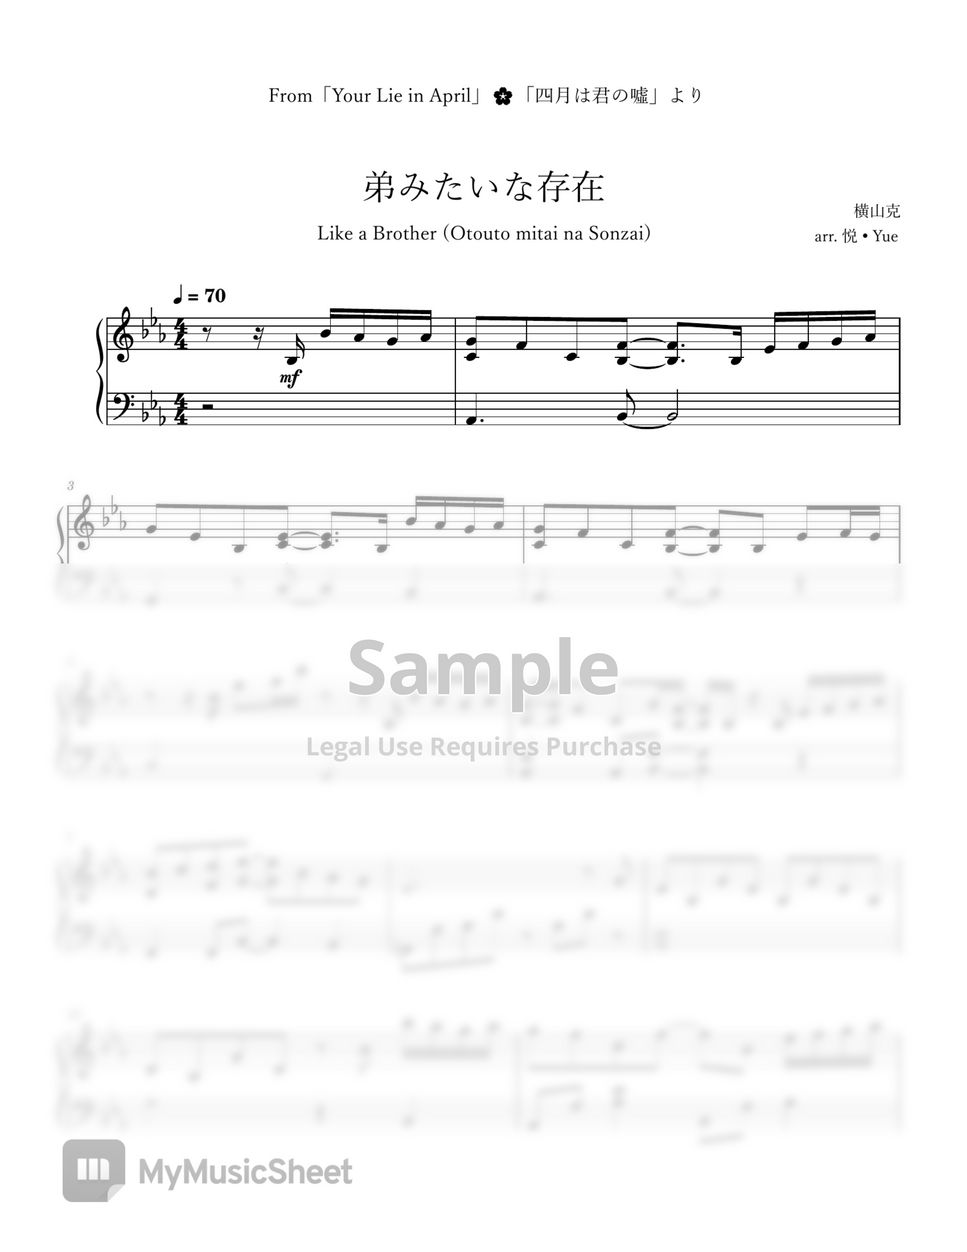 横山克 - Your Lie in April「Like a Brother」(Otouto Mitai na Sonzai) Piano by 悦 • Yue